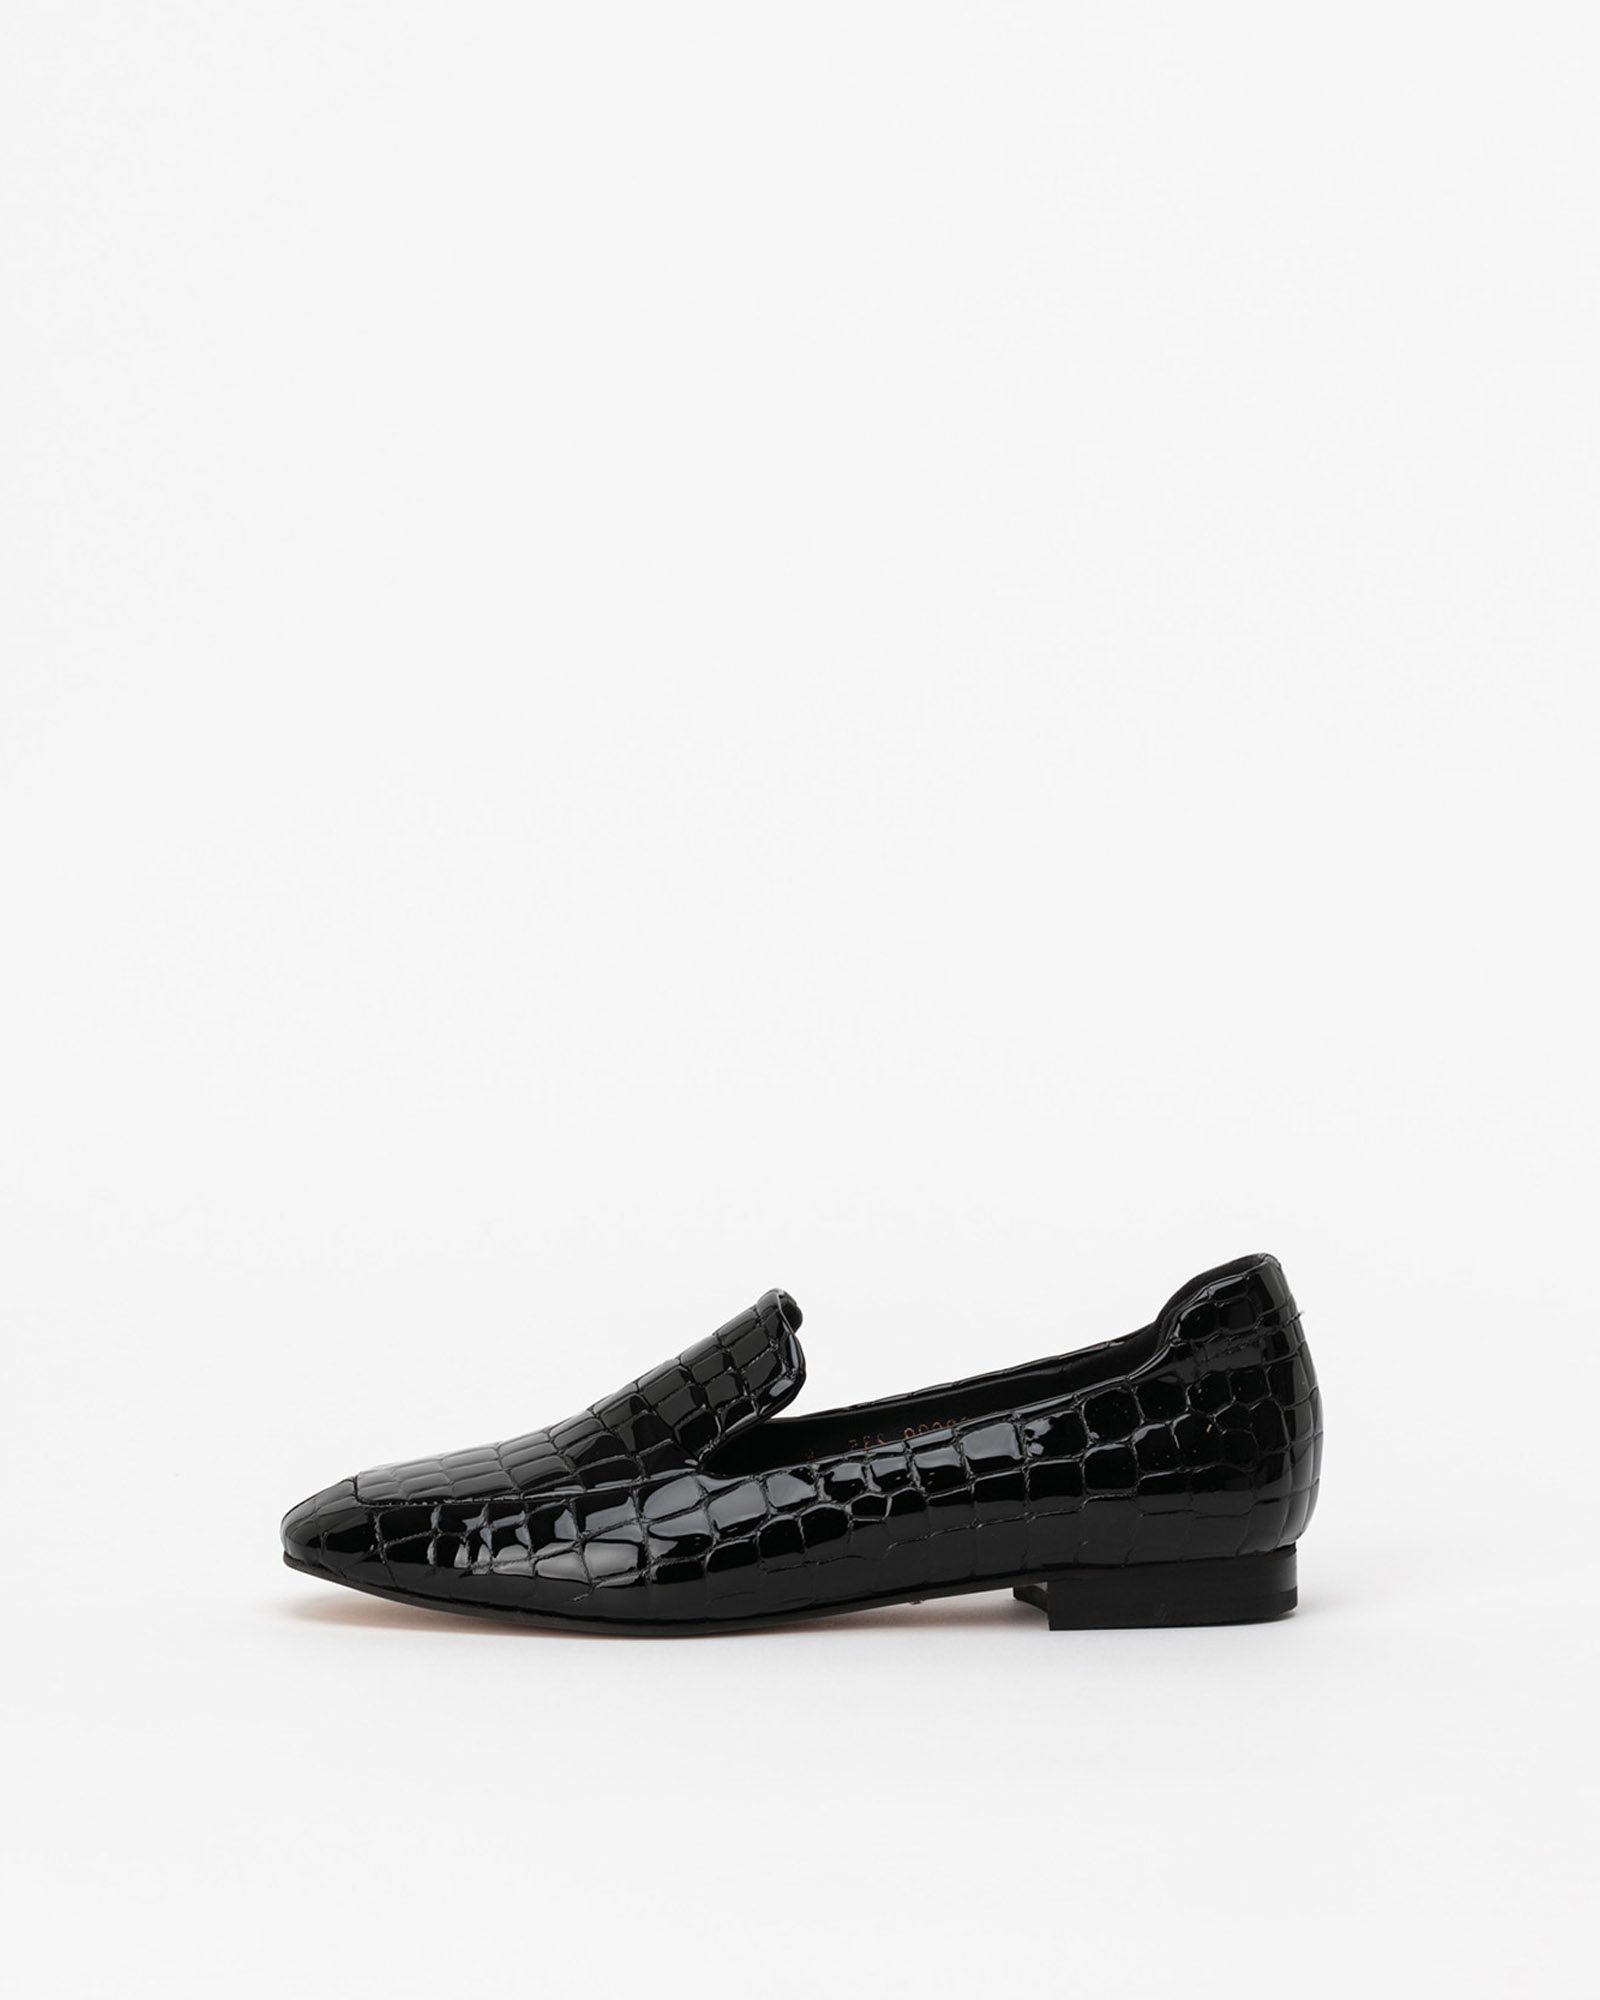 Affabile Loafers in Black Crocodile Prints